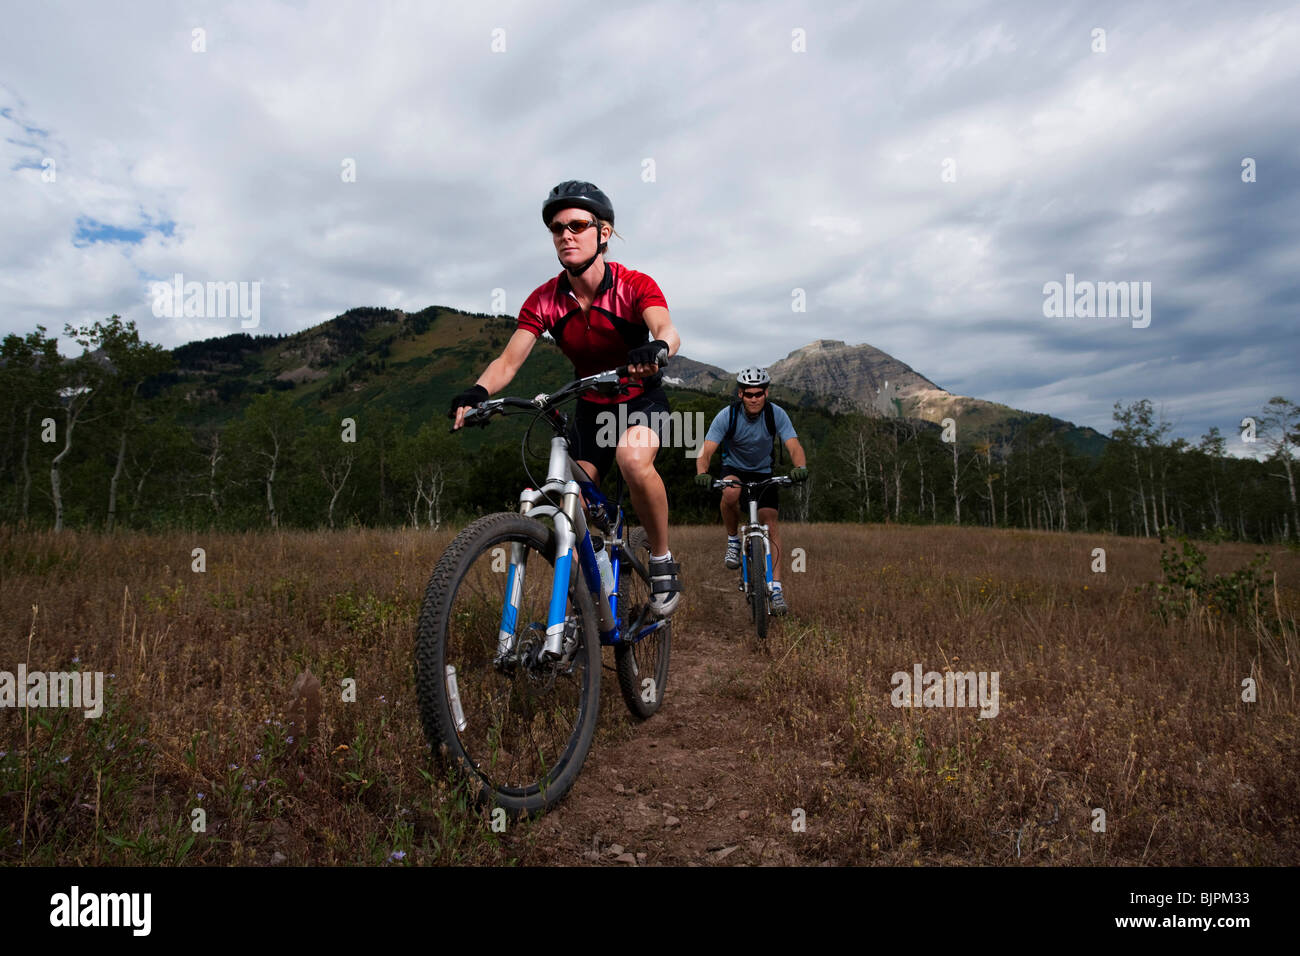 Cyclisme En Nature d'image et photos Alamy